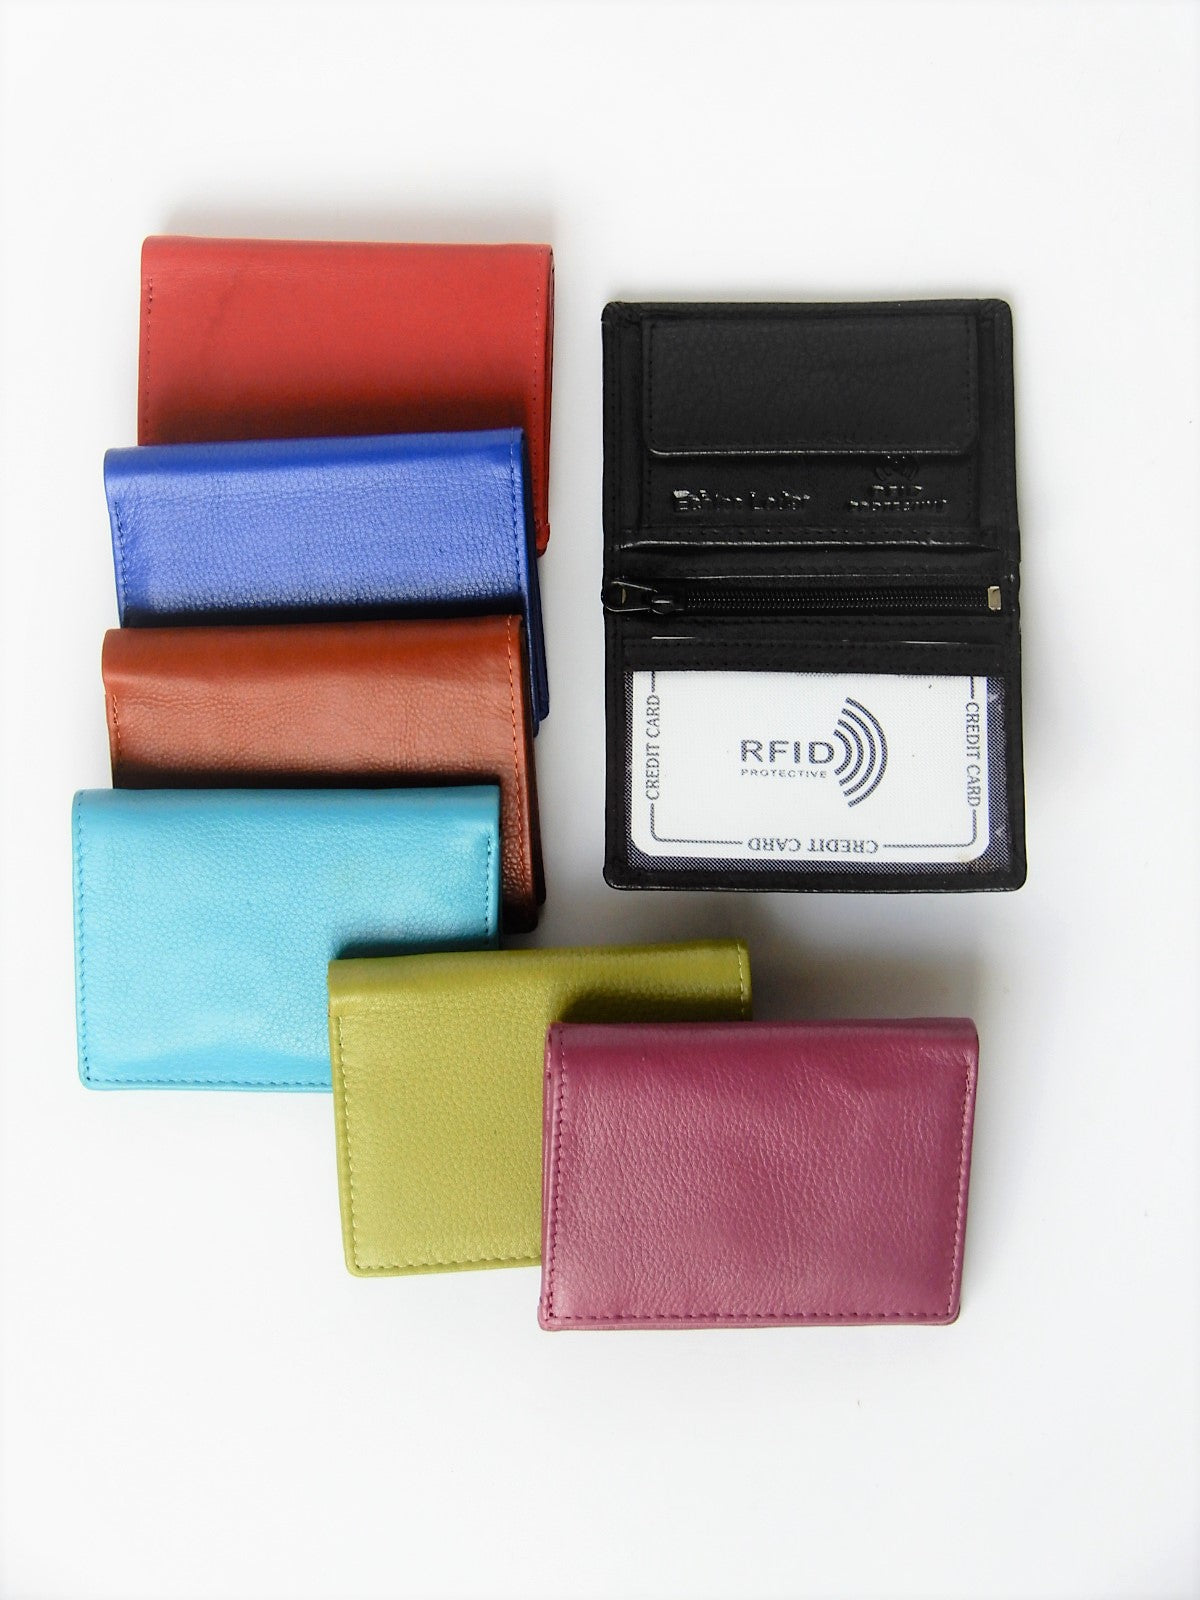 Minibörse mit RFID-Schutz, diverse Farben